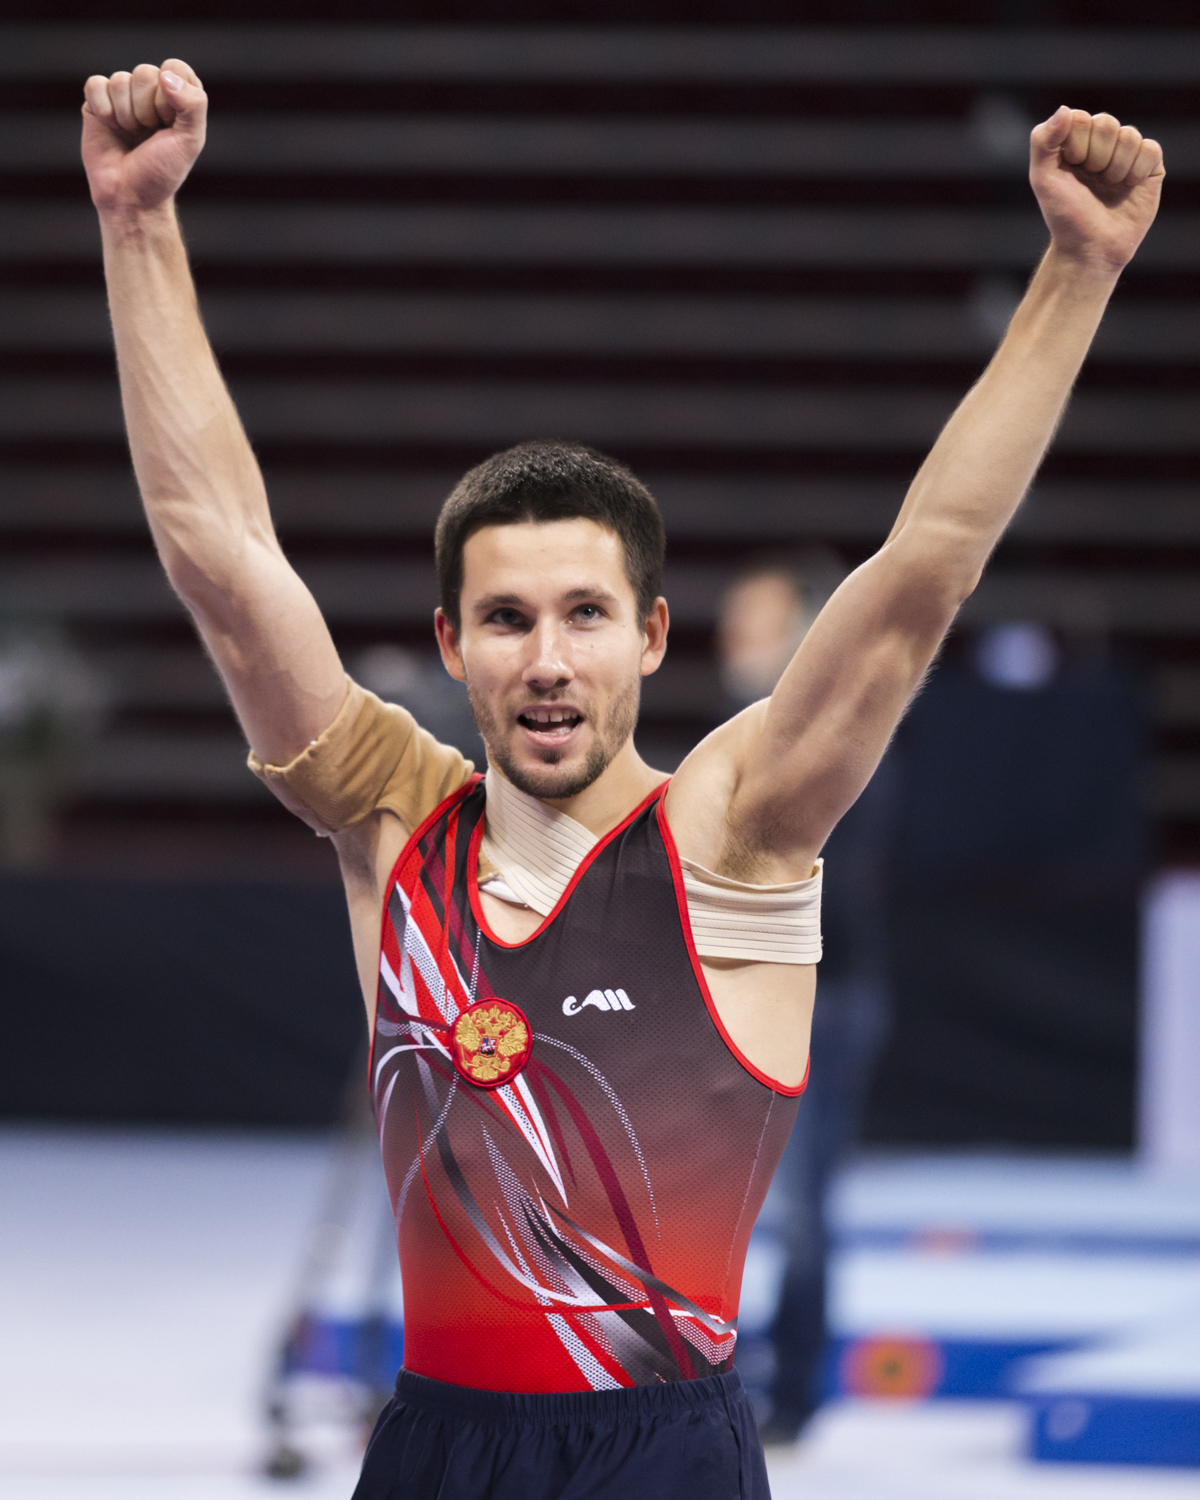 Photographie couleur de Mikhail Zalomin, champion du monde de double mini trampoline, qui lêve les bras de joie d'avoir réussi sa compétition